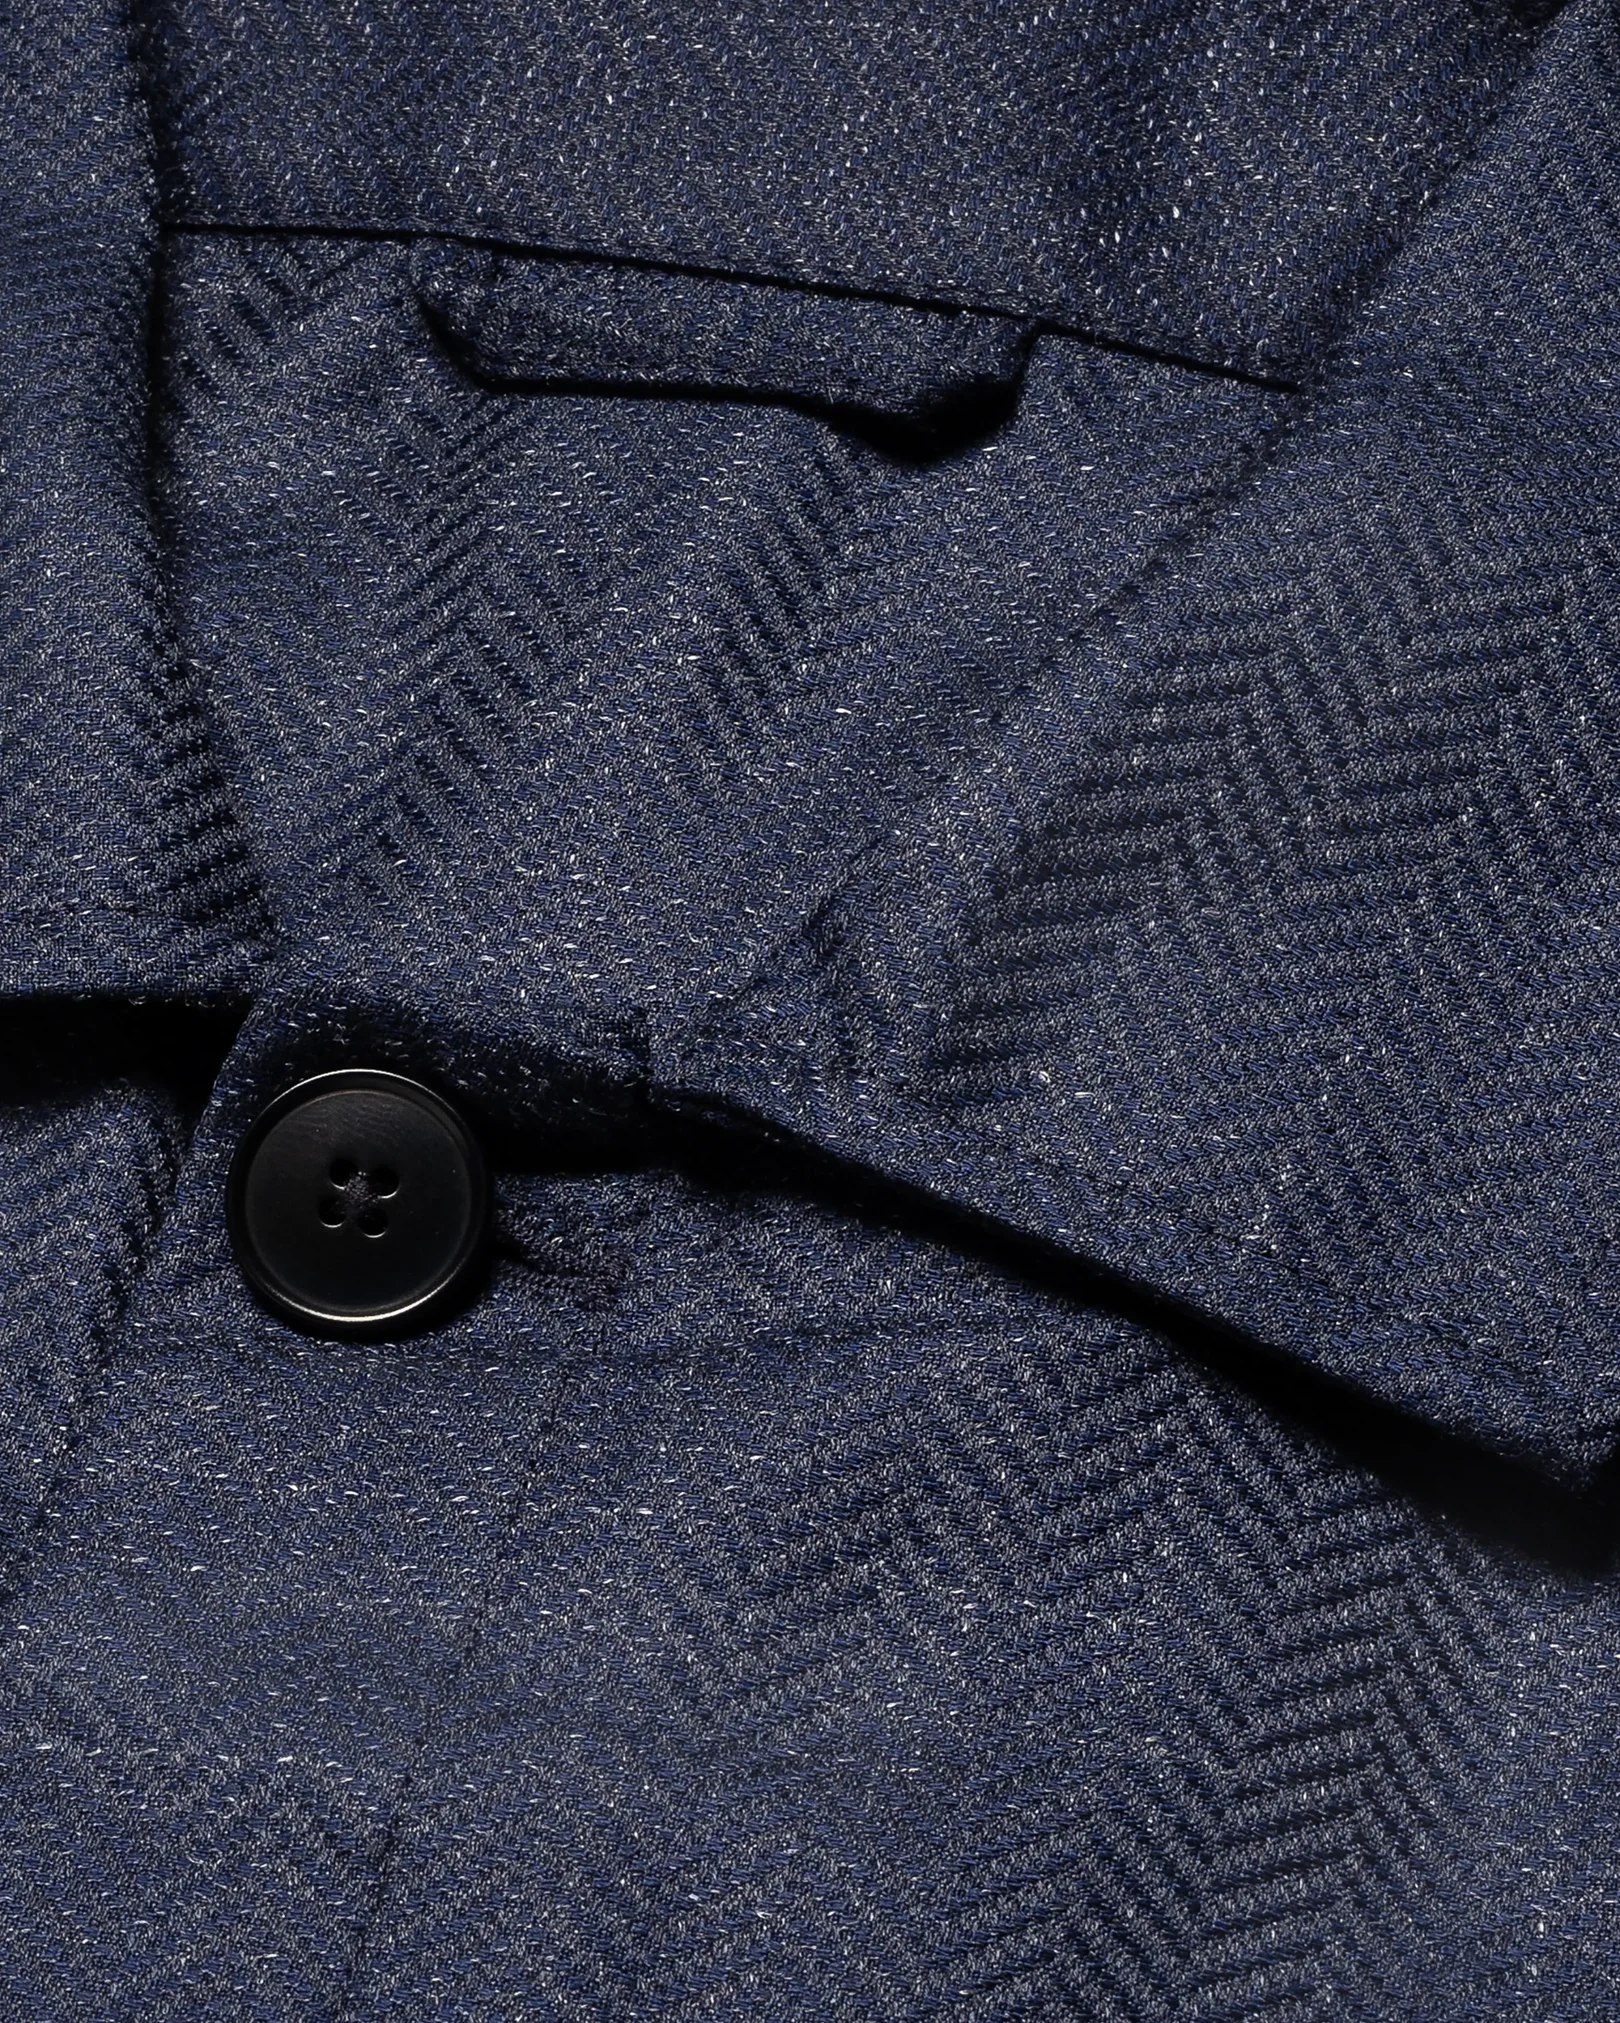 Eton - navy blue regular blend overshirt